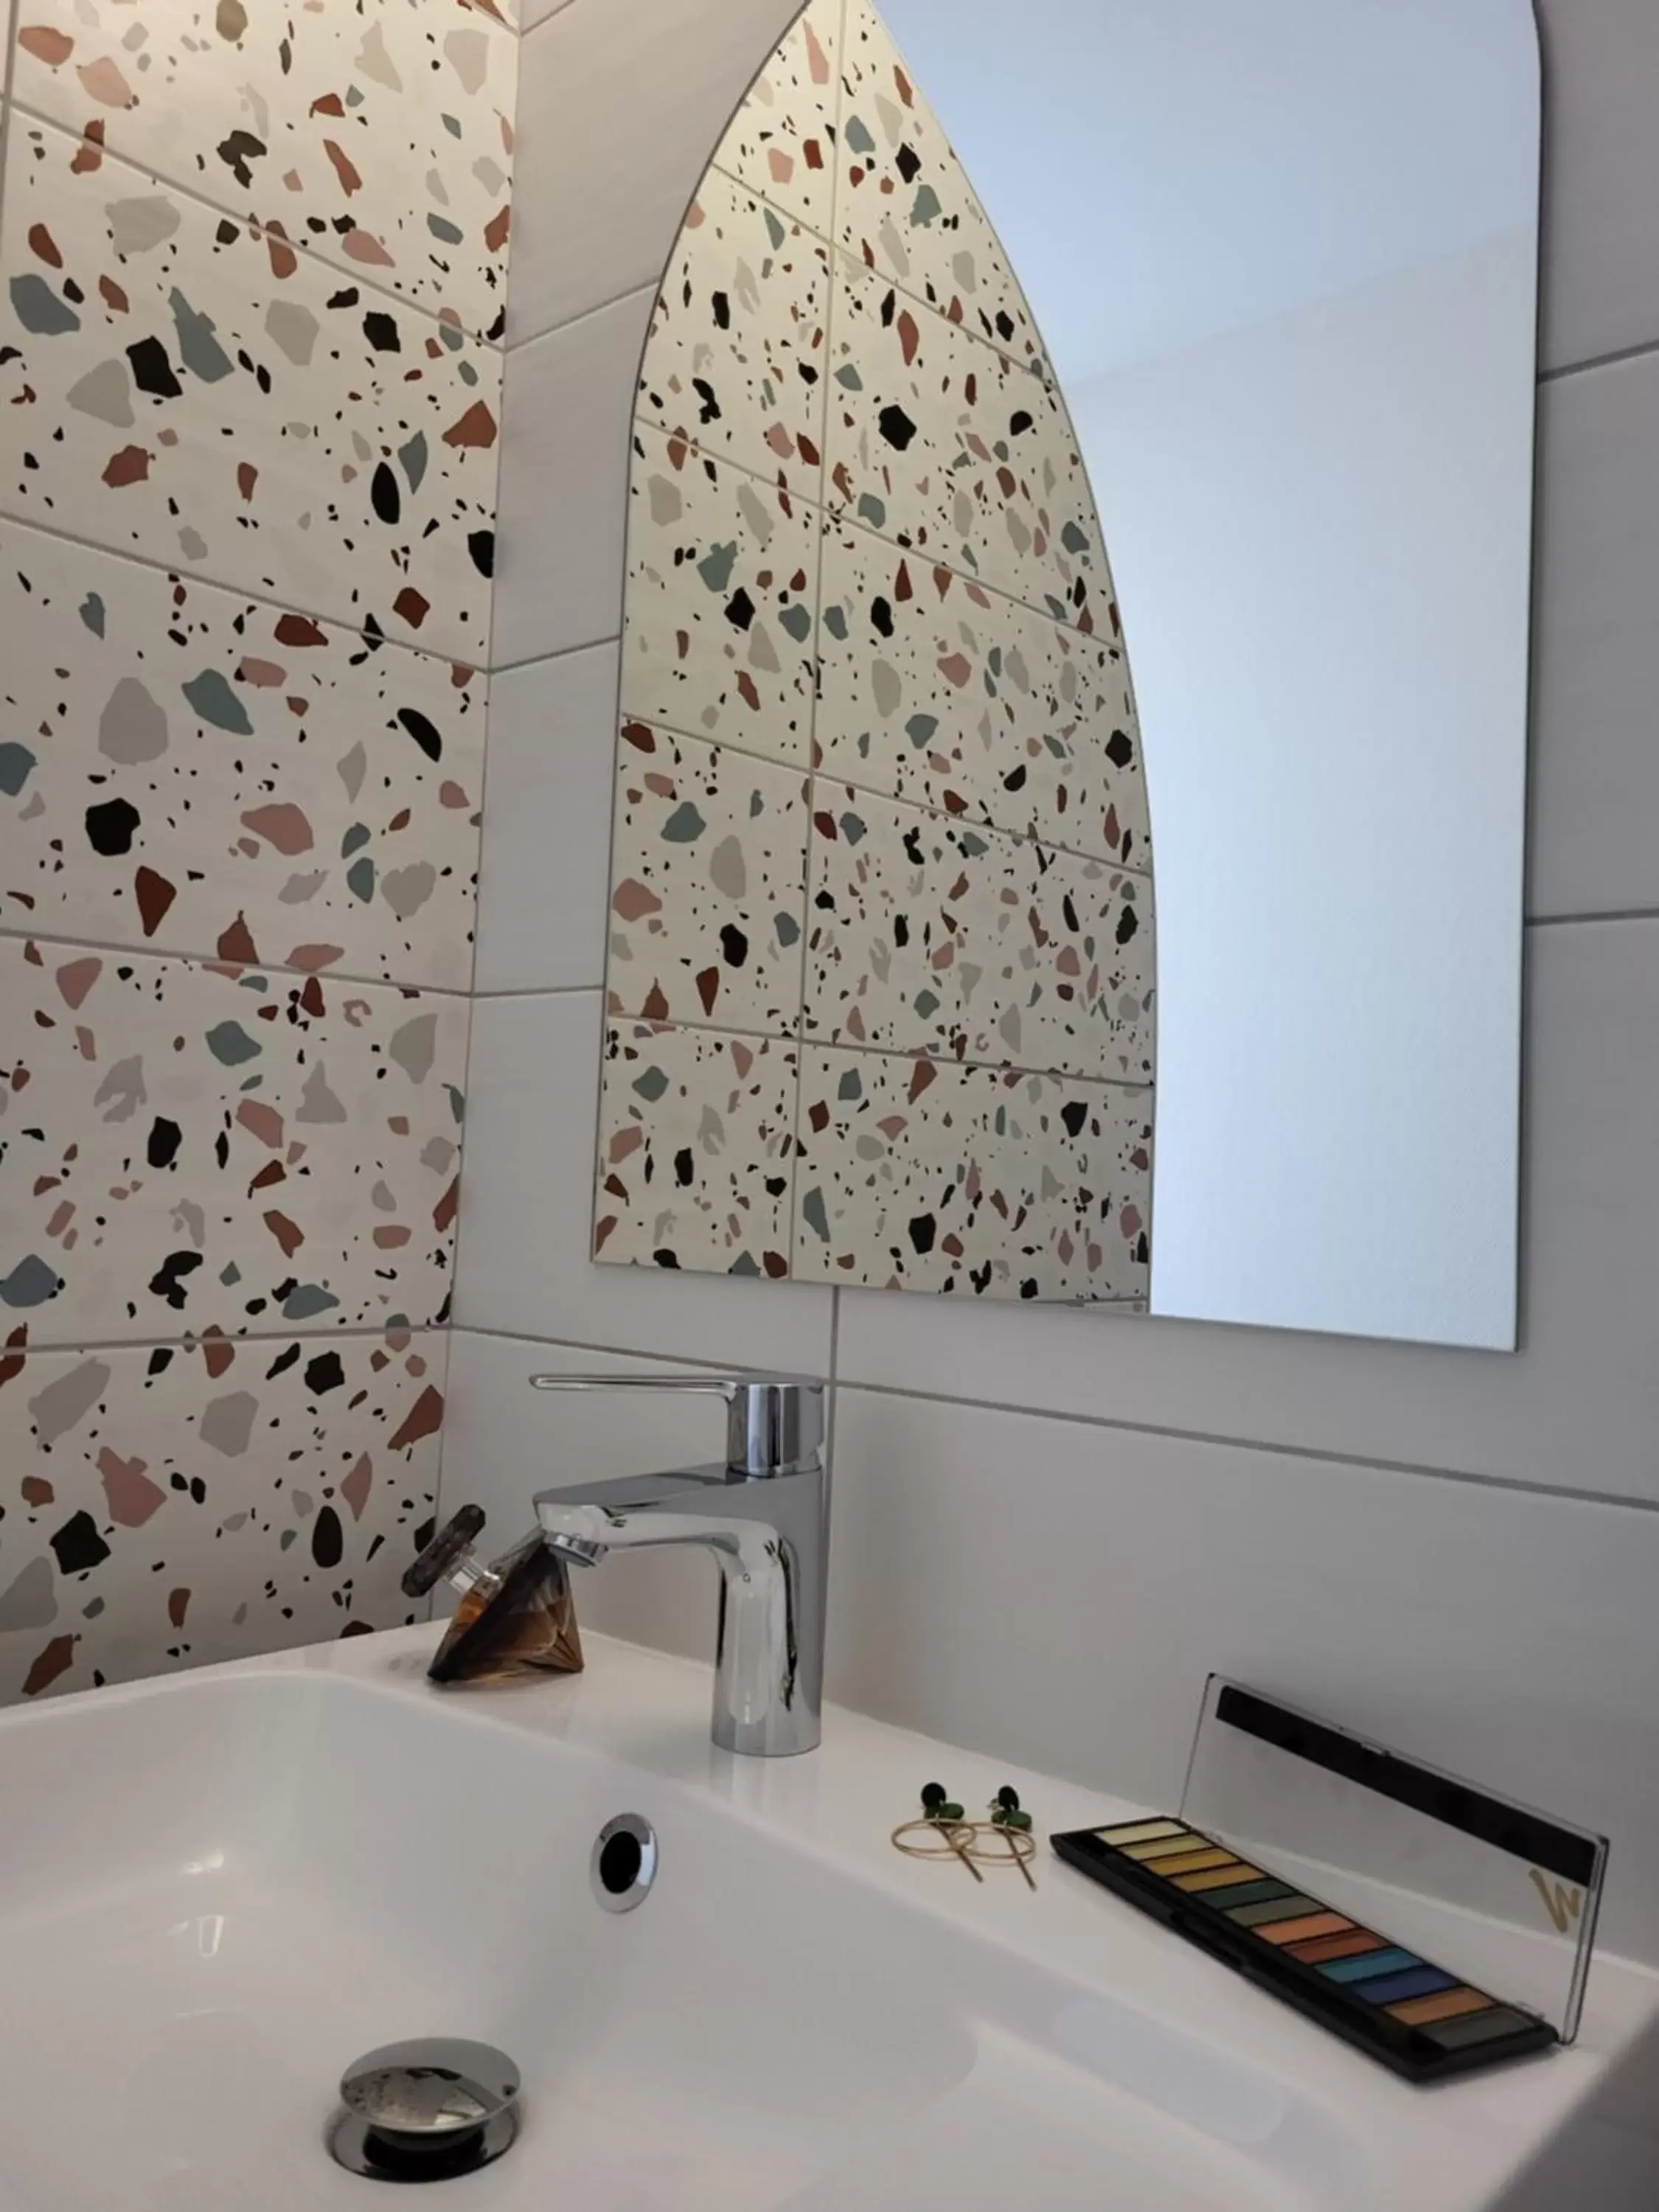 Bathroom in Mage hôtels - Hôtel la grenette - Brasserie Bonté Divine